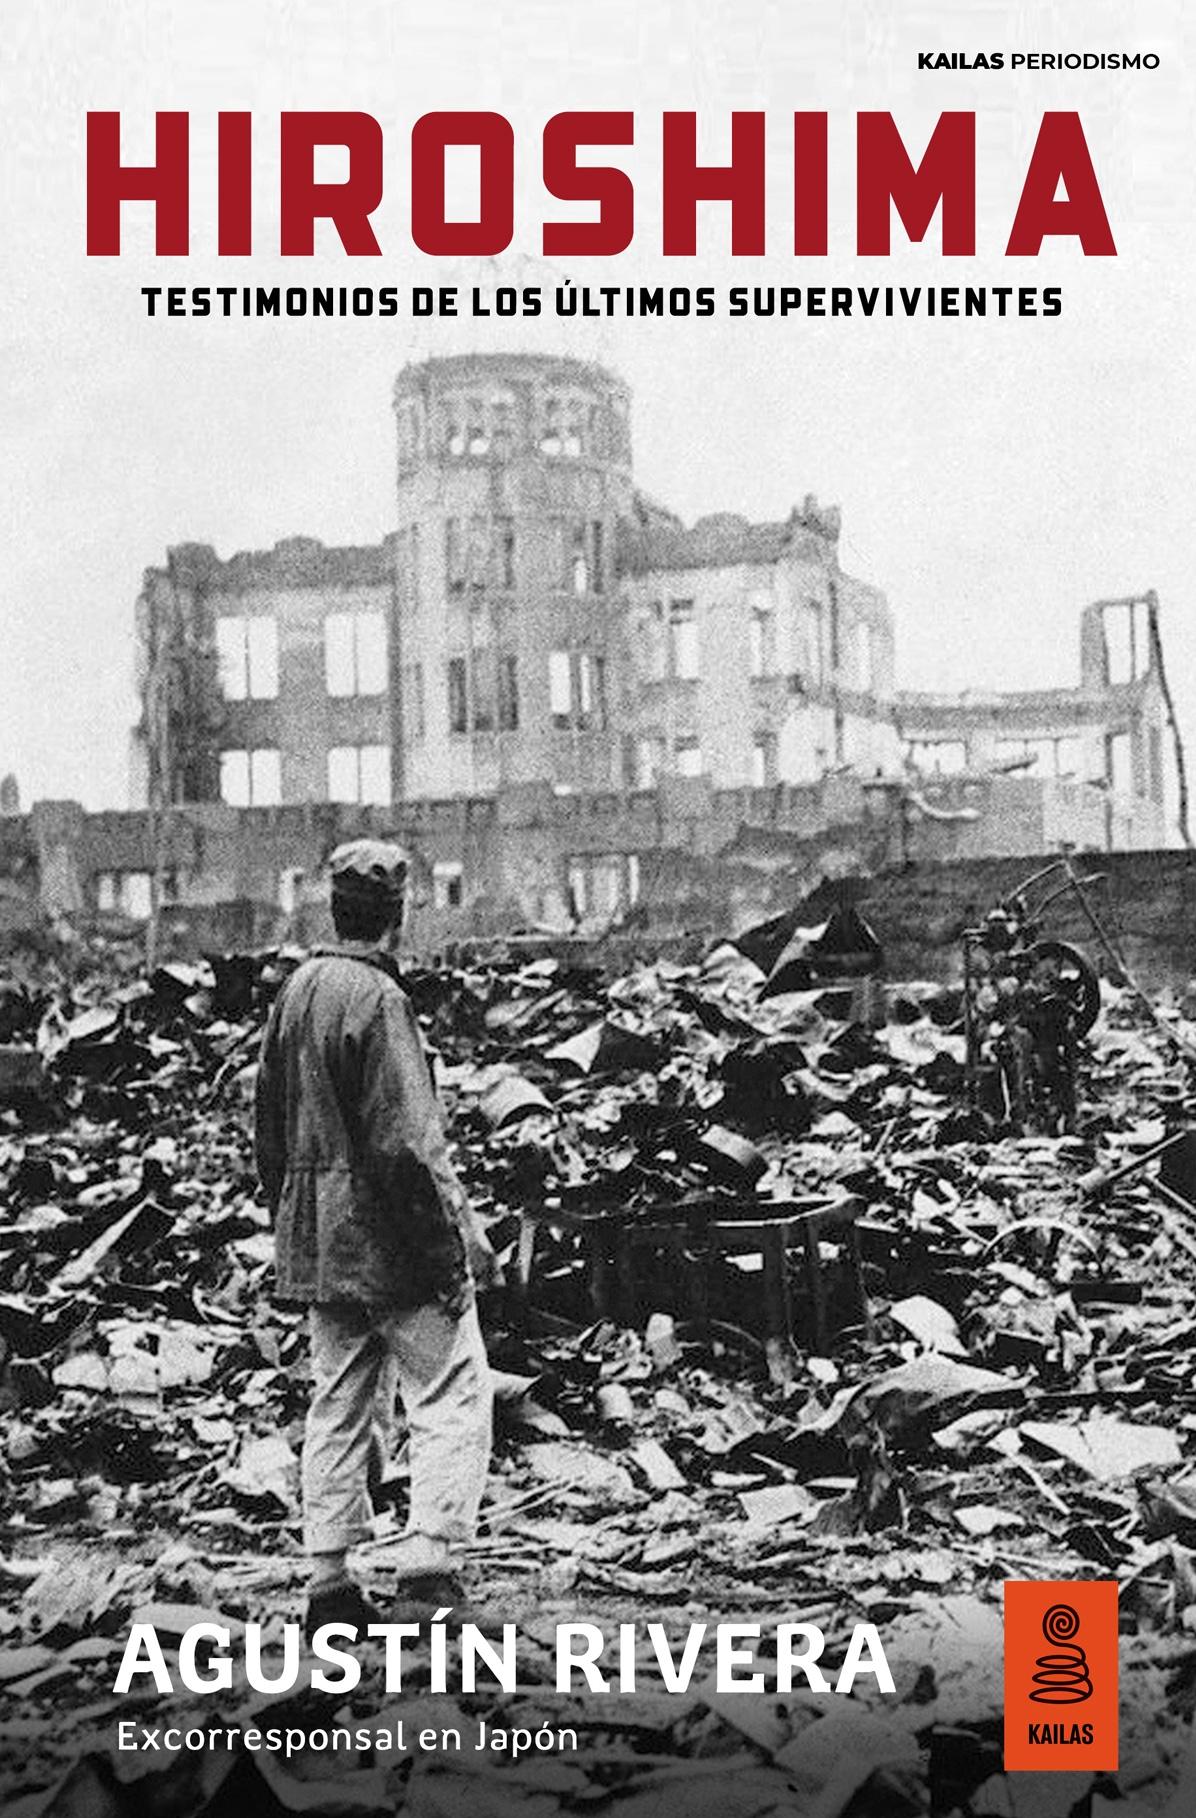 Hiroshima "Testimonios de los últimos supervivientes"